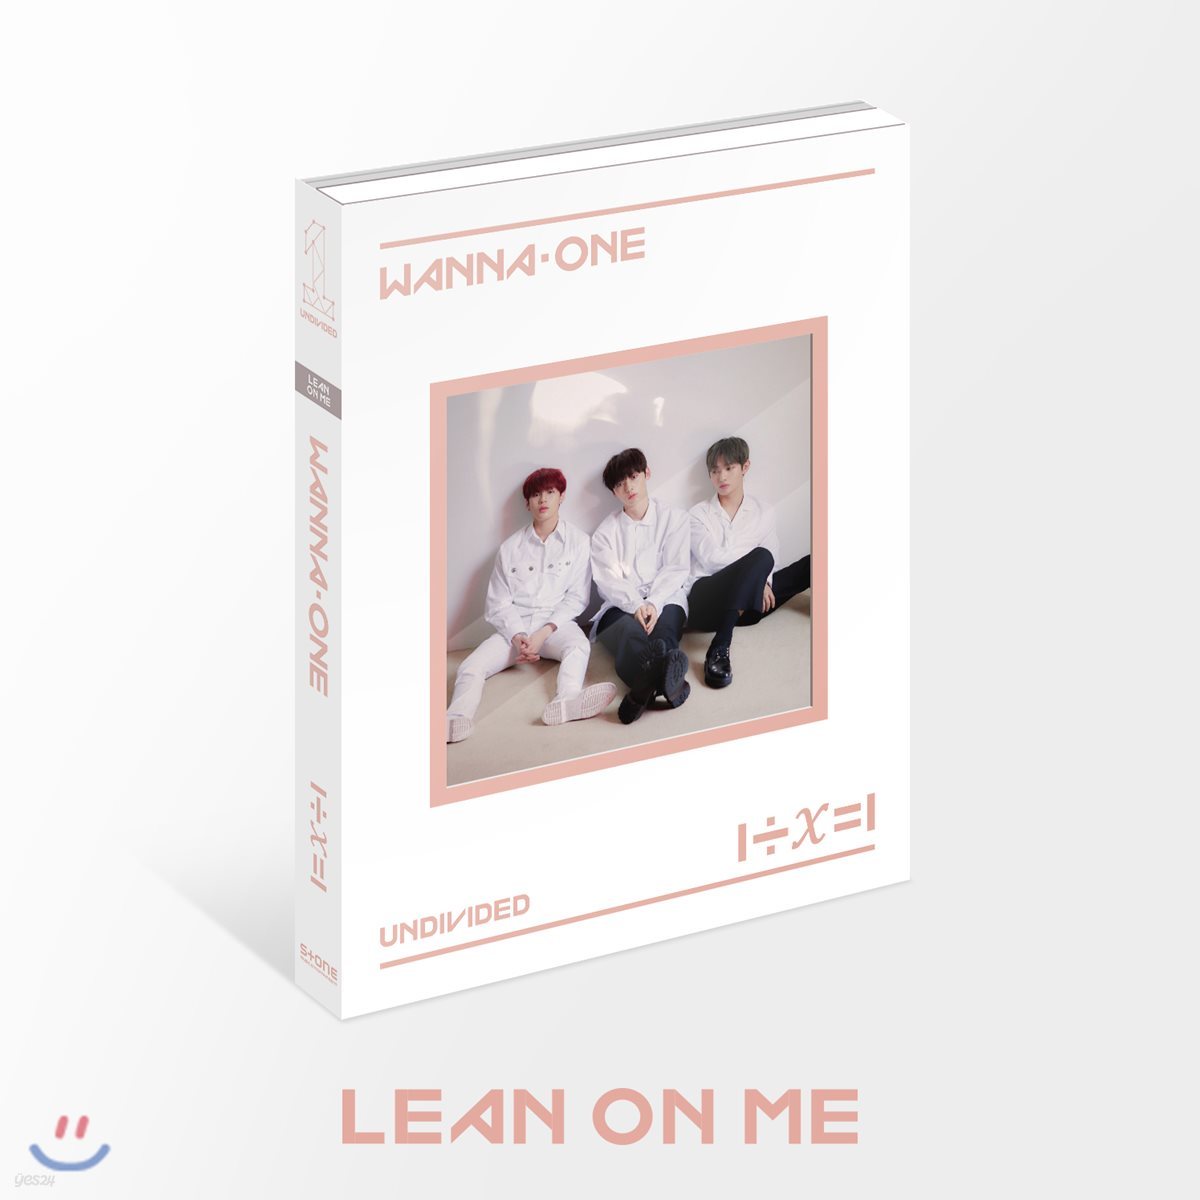 워너원 (Wanna One) - 1÷χ=1 (UNDIVIDED) [Lean On Me Ver.]